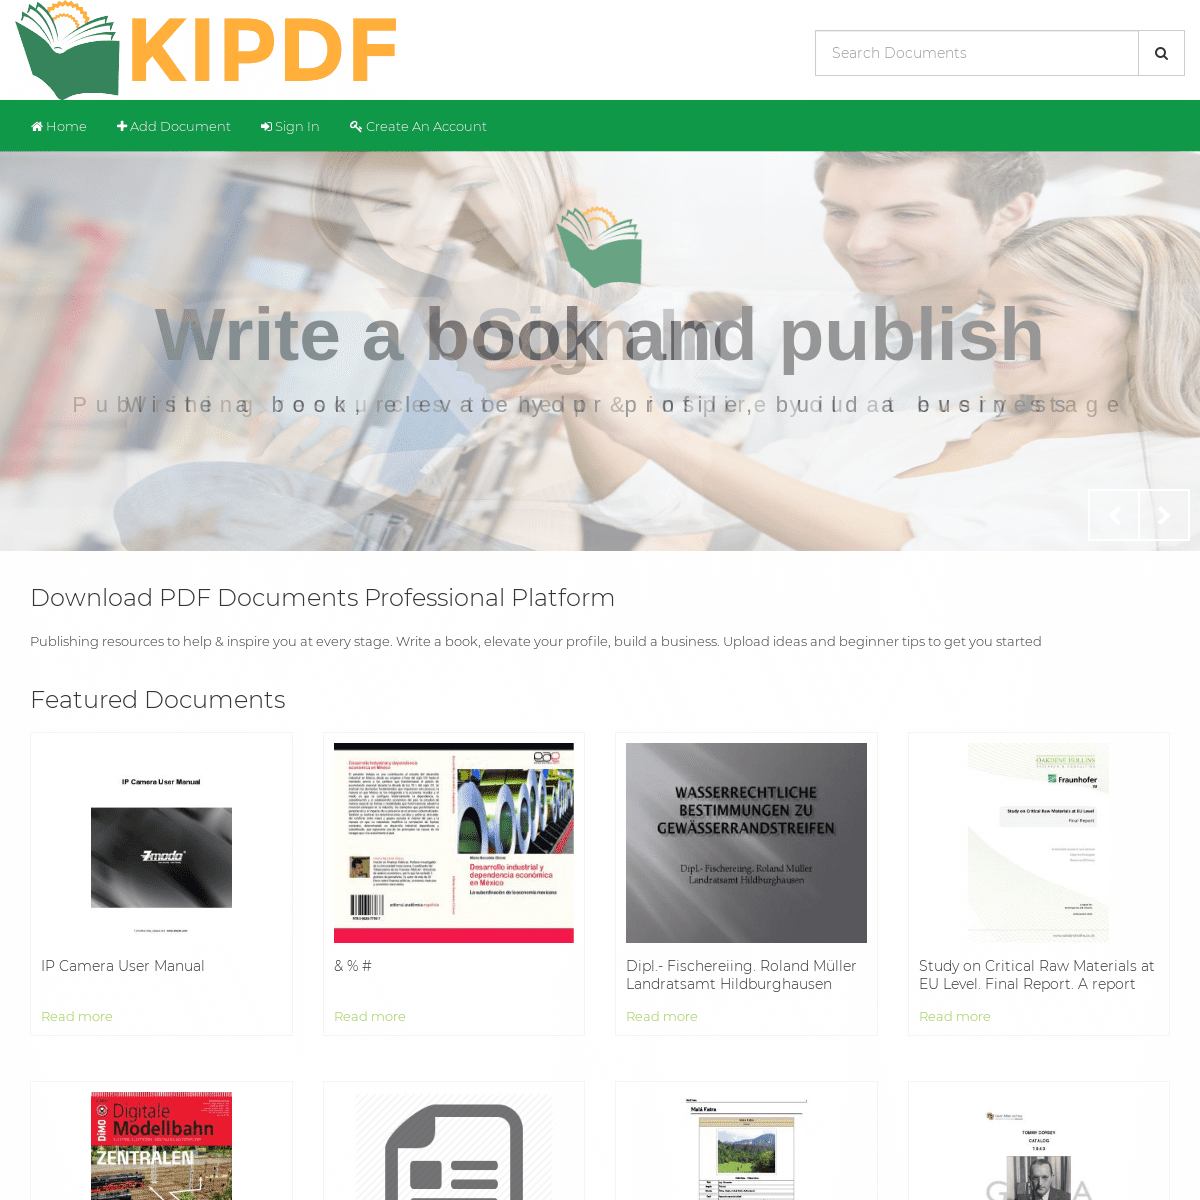 A complete backup of kipdf.com